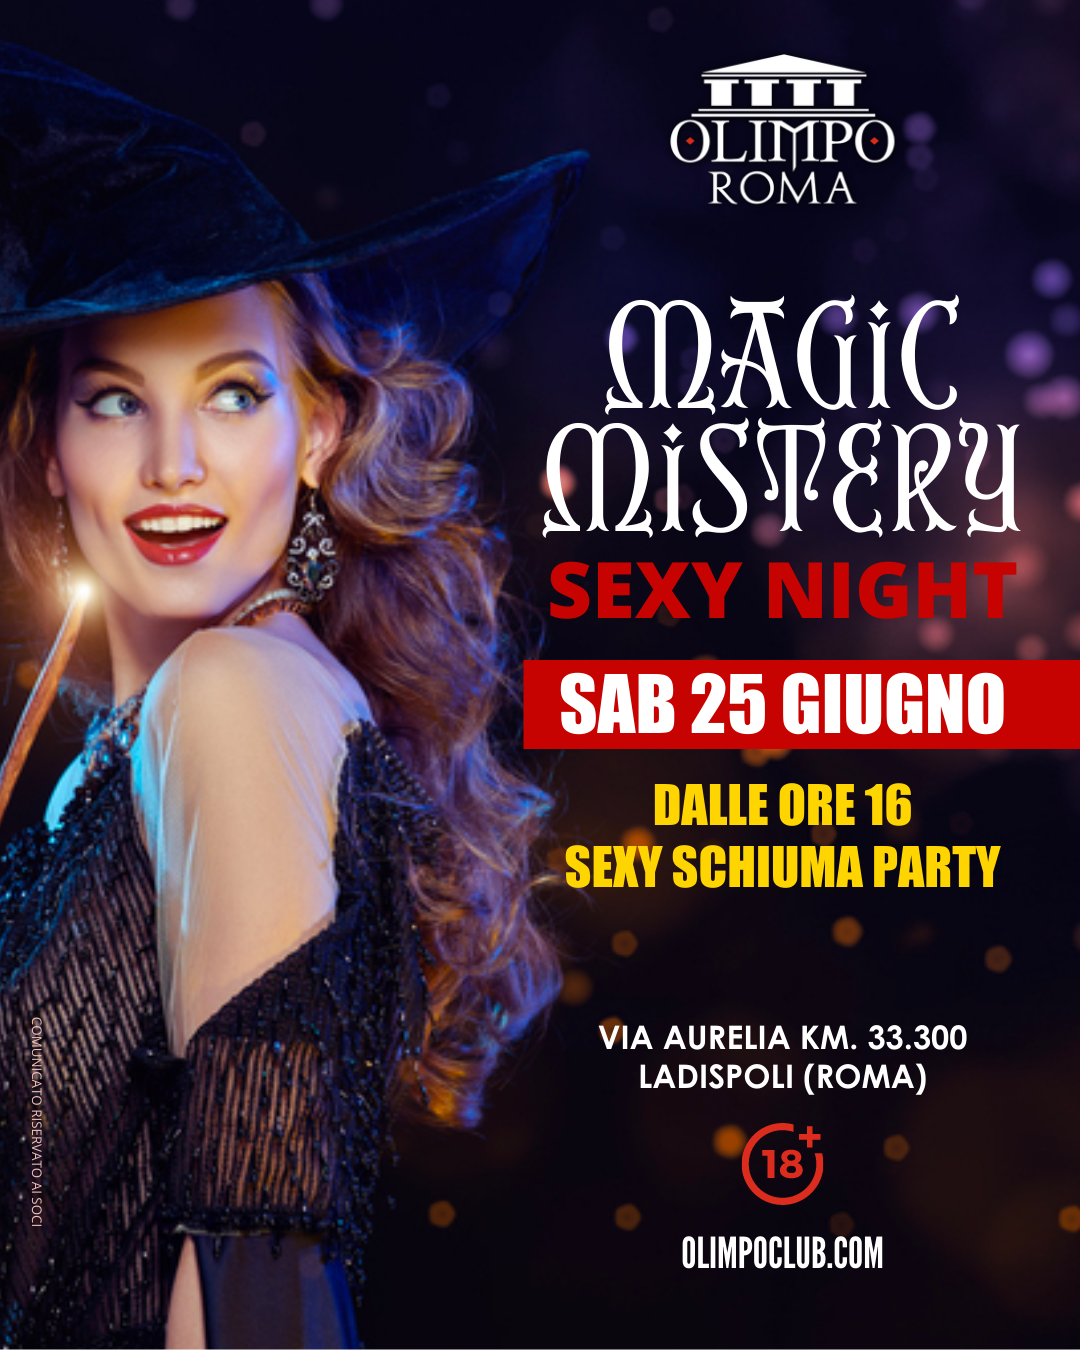 magic mistery sexy night olimpo club roma